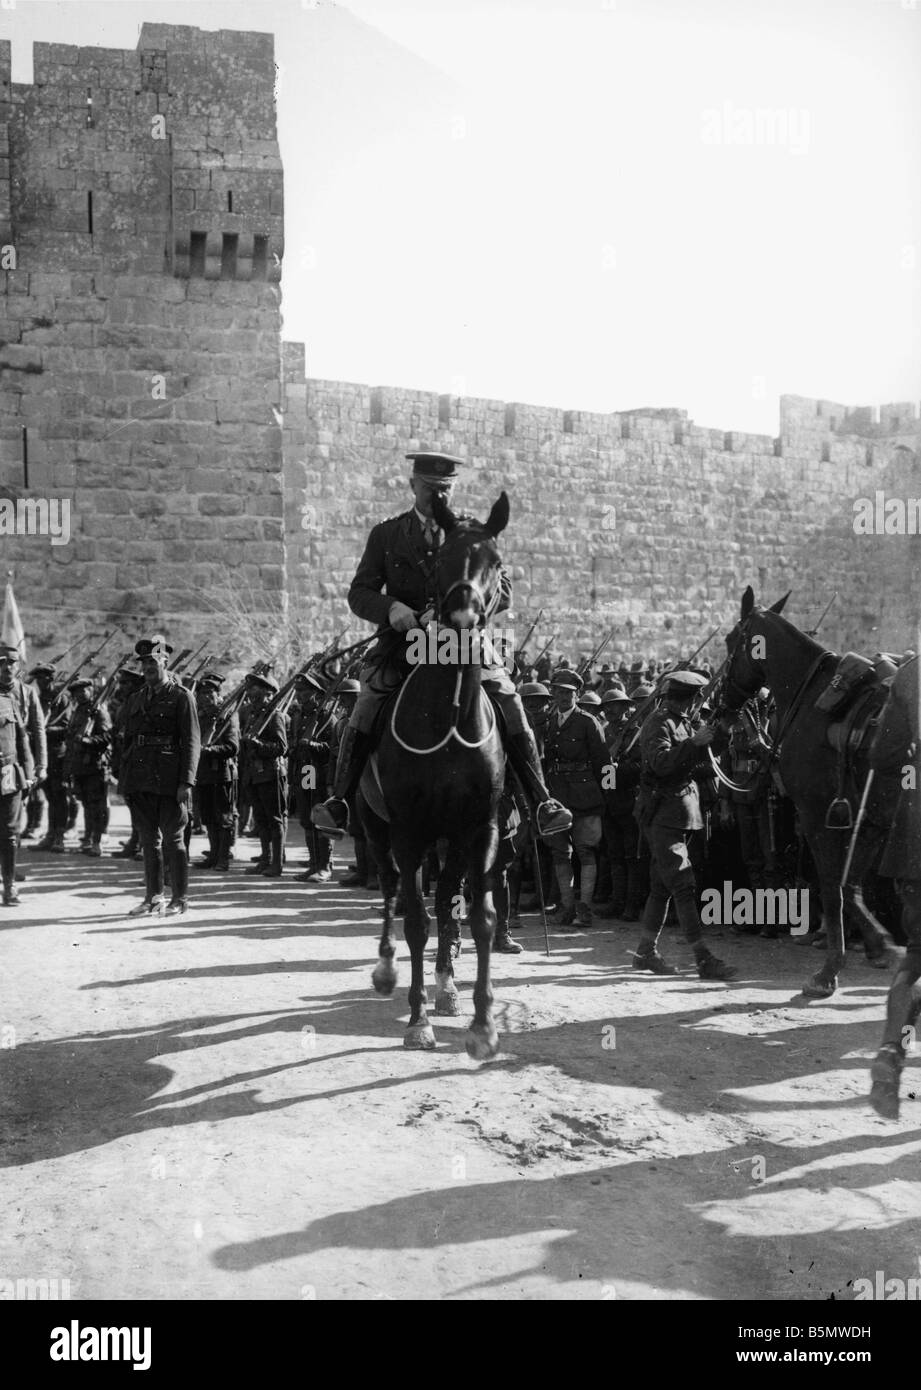 9Es 1917 12 9 A1 1 E WW1 captura de Jerusalén por Gran Bretaña Guerra Mundial 1 Turco batallas británico captura de Jerusalén por British tro Foto de stock